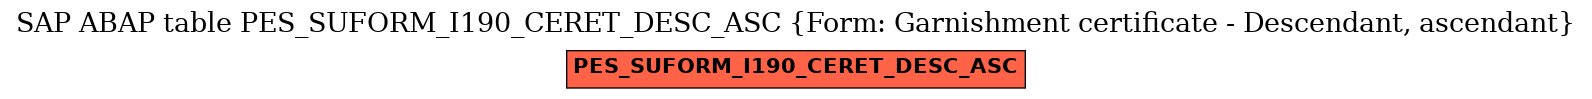 E-R Diagram for table PES_SUFORM_I190_CERET_DESC_ASC (Form: Garnishment certificate - Descendant, ascendant)